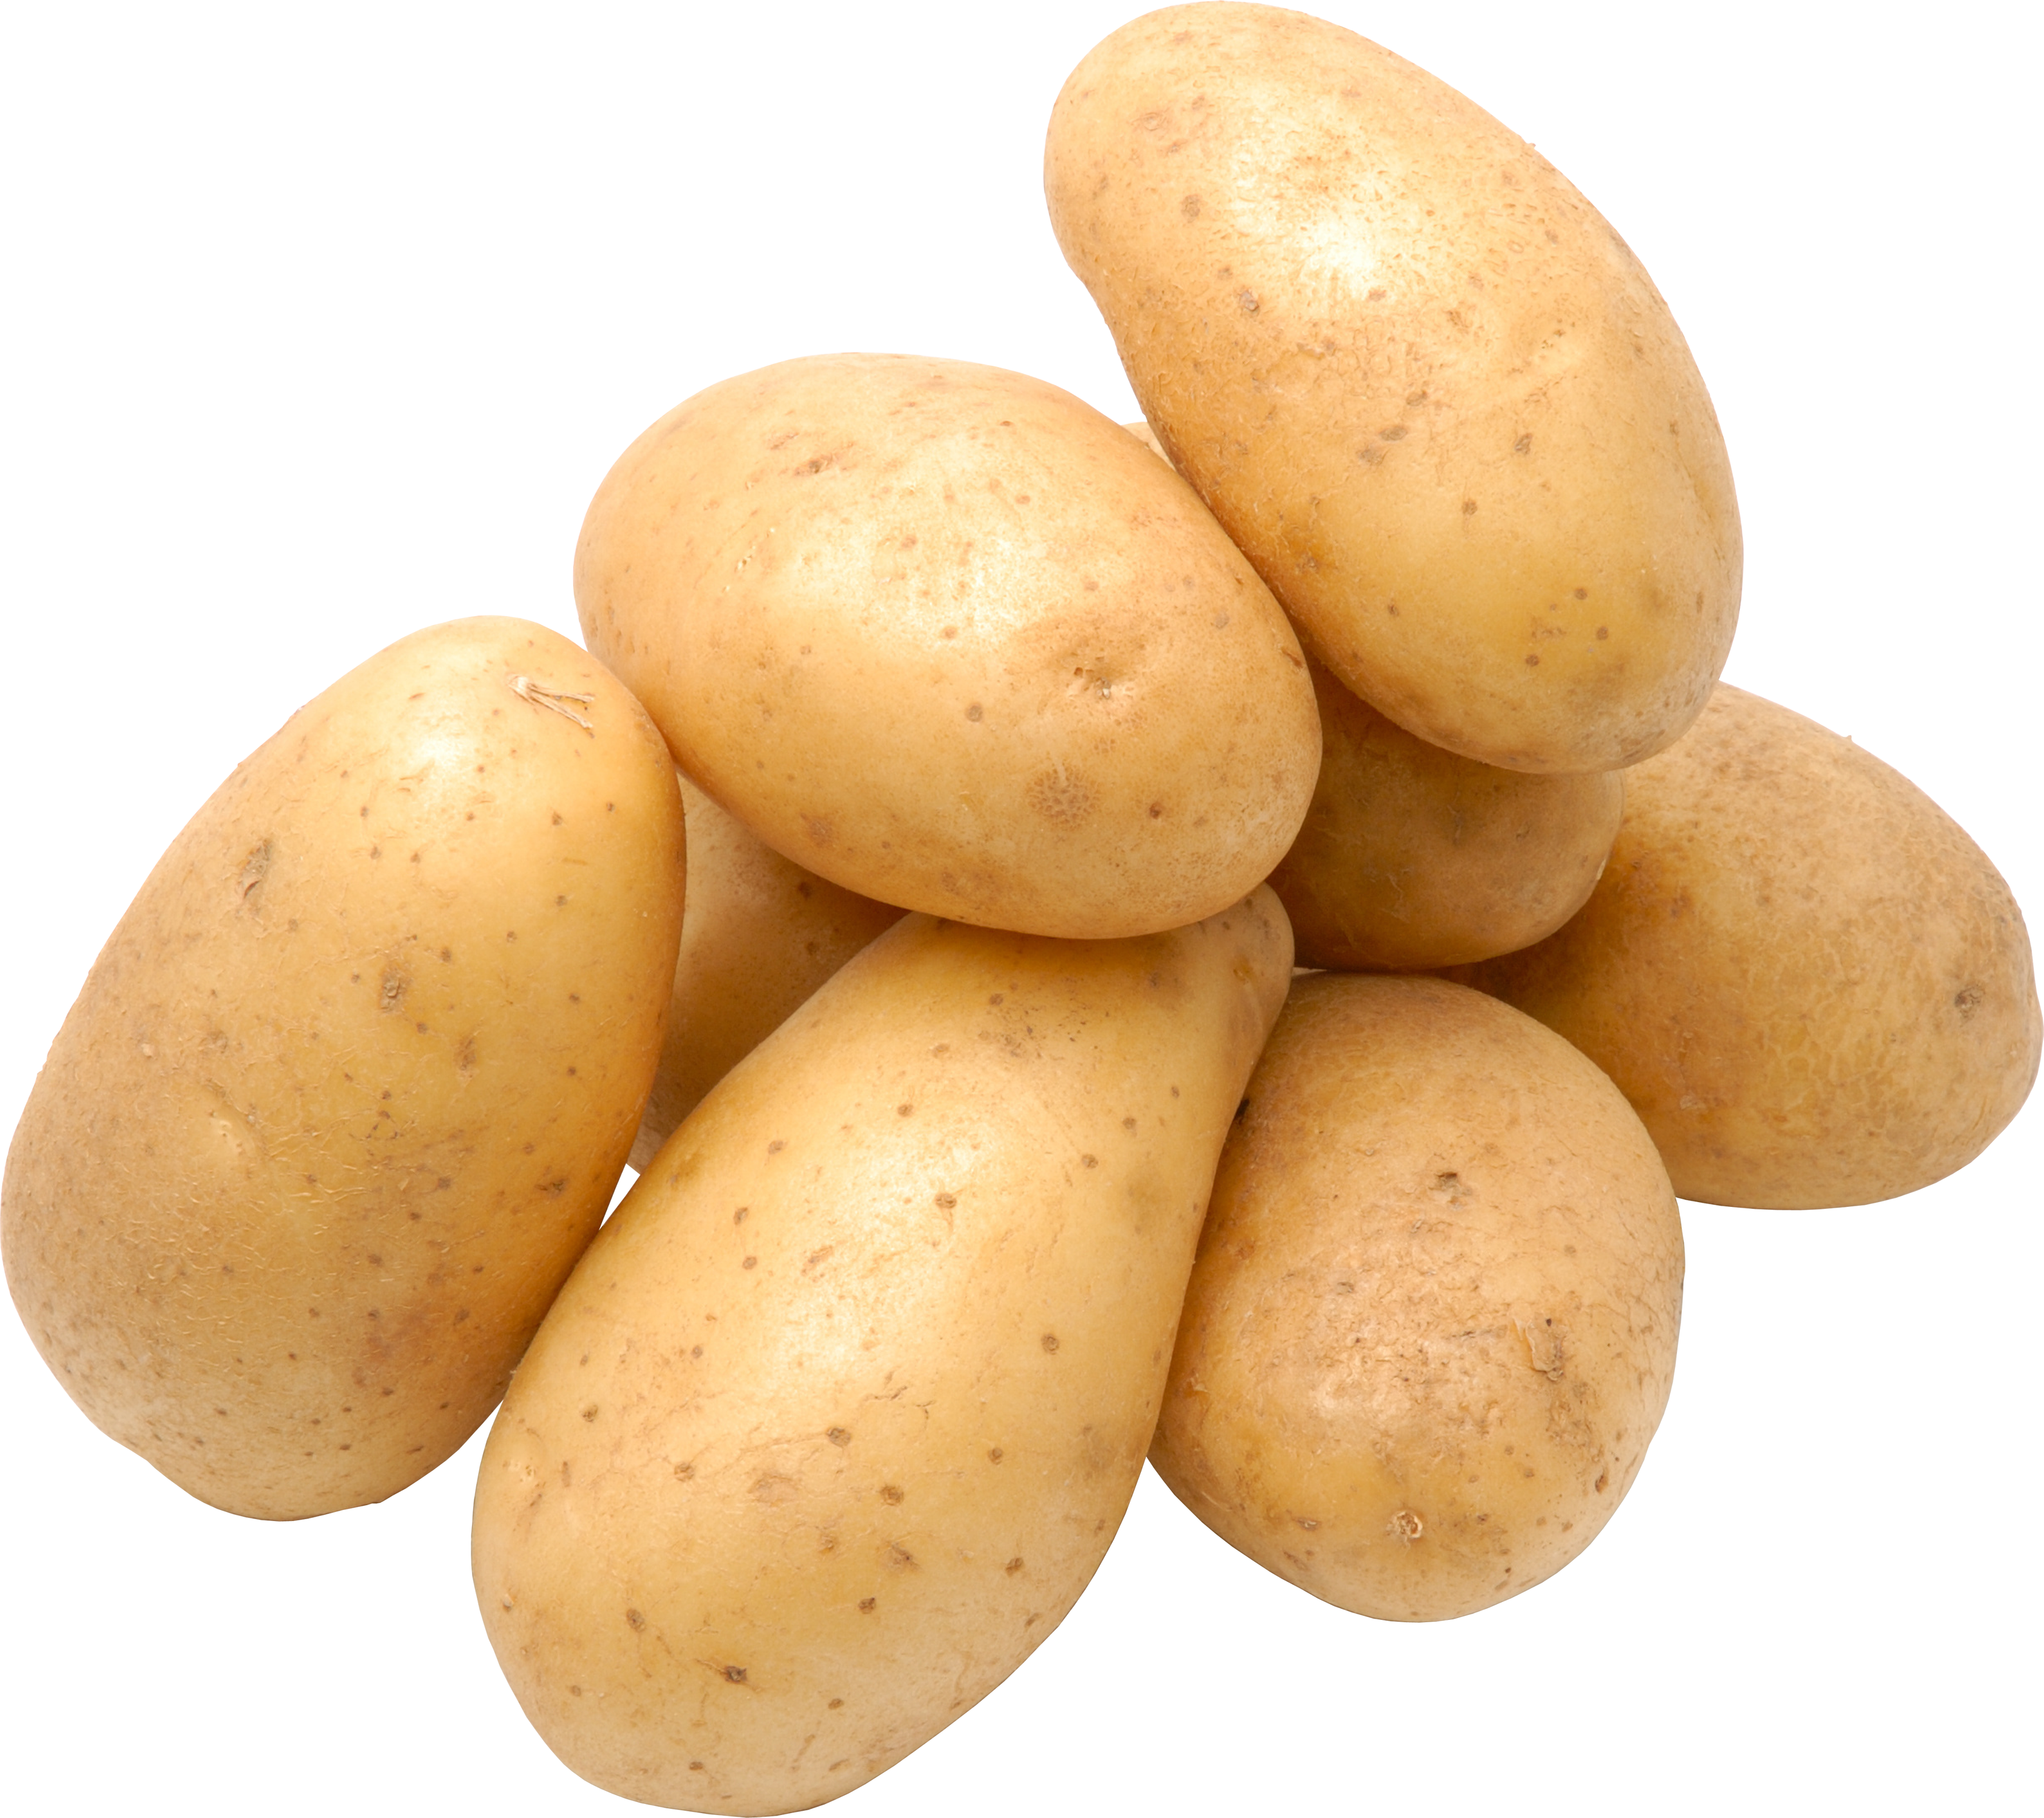 Batatas frescas